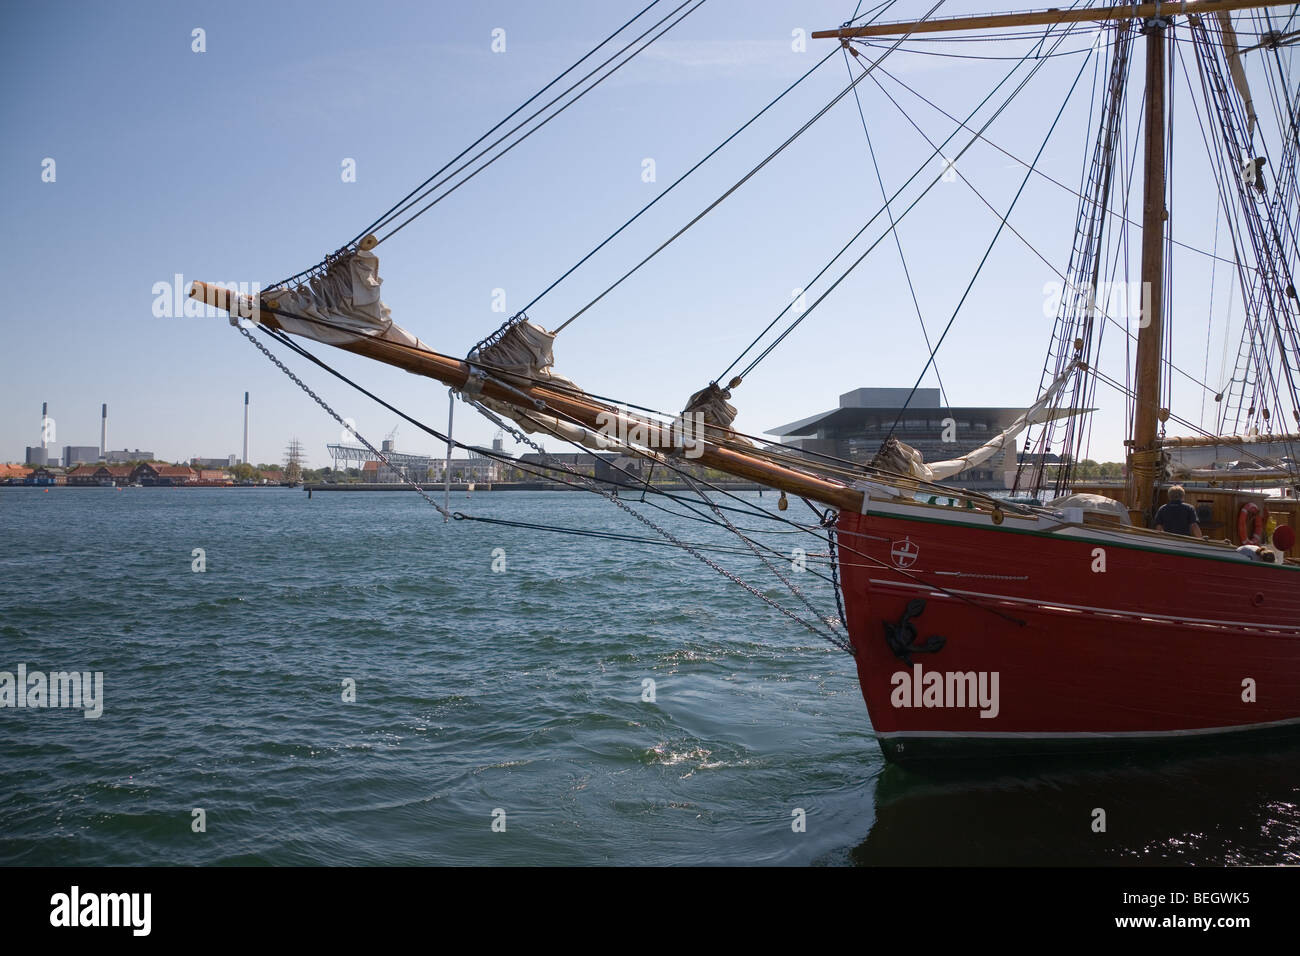 Lo spirito e la prua del 35 m topsail schooner 'Lilla Dan' di lasciare il porto di Copenhagen con il Teatro dell'opera in background Foto Stock